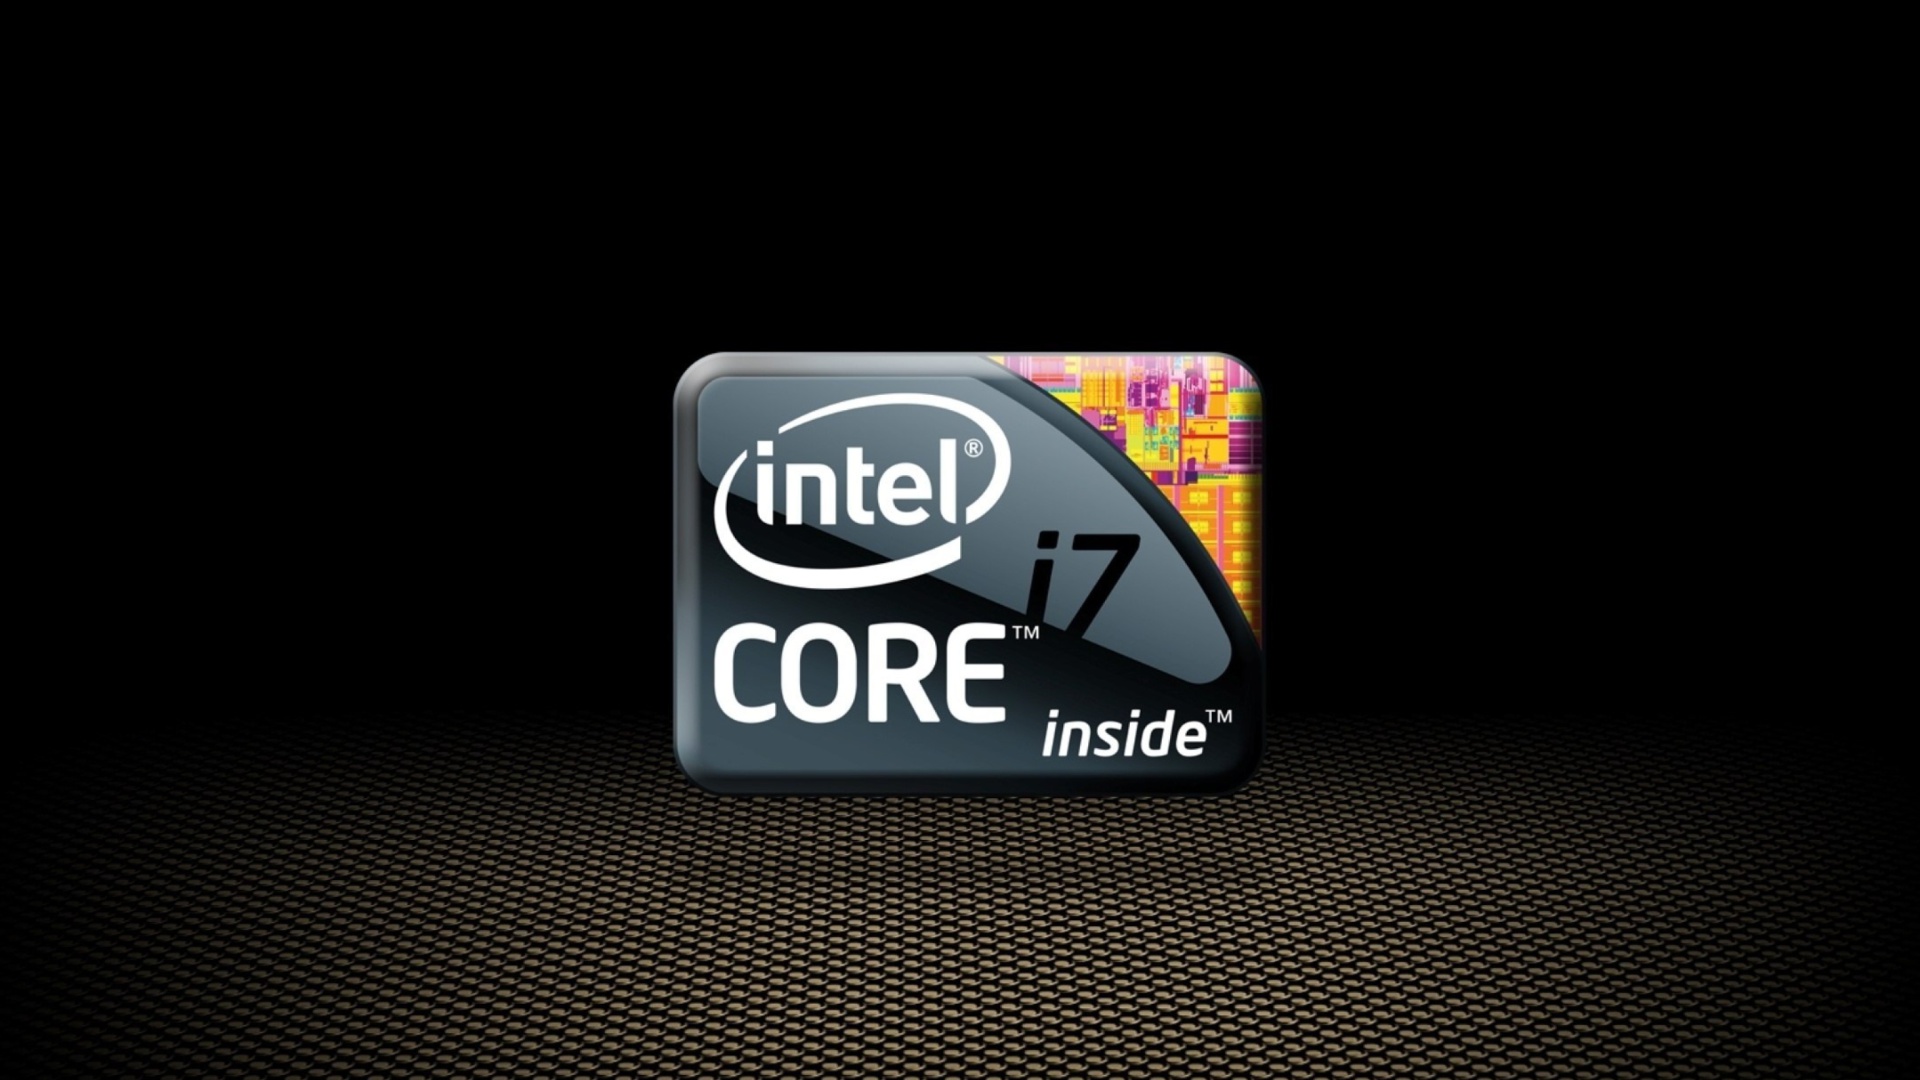 Intel Core i7 CPU wallpaper 1920x1080